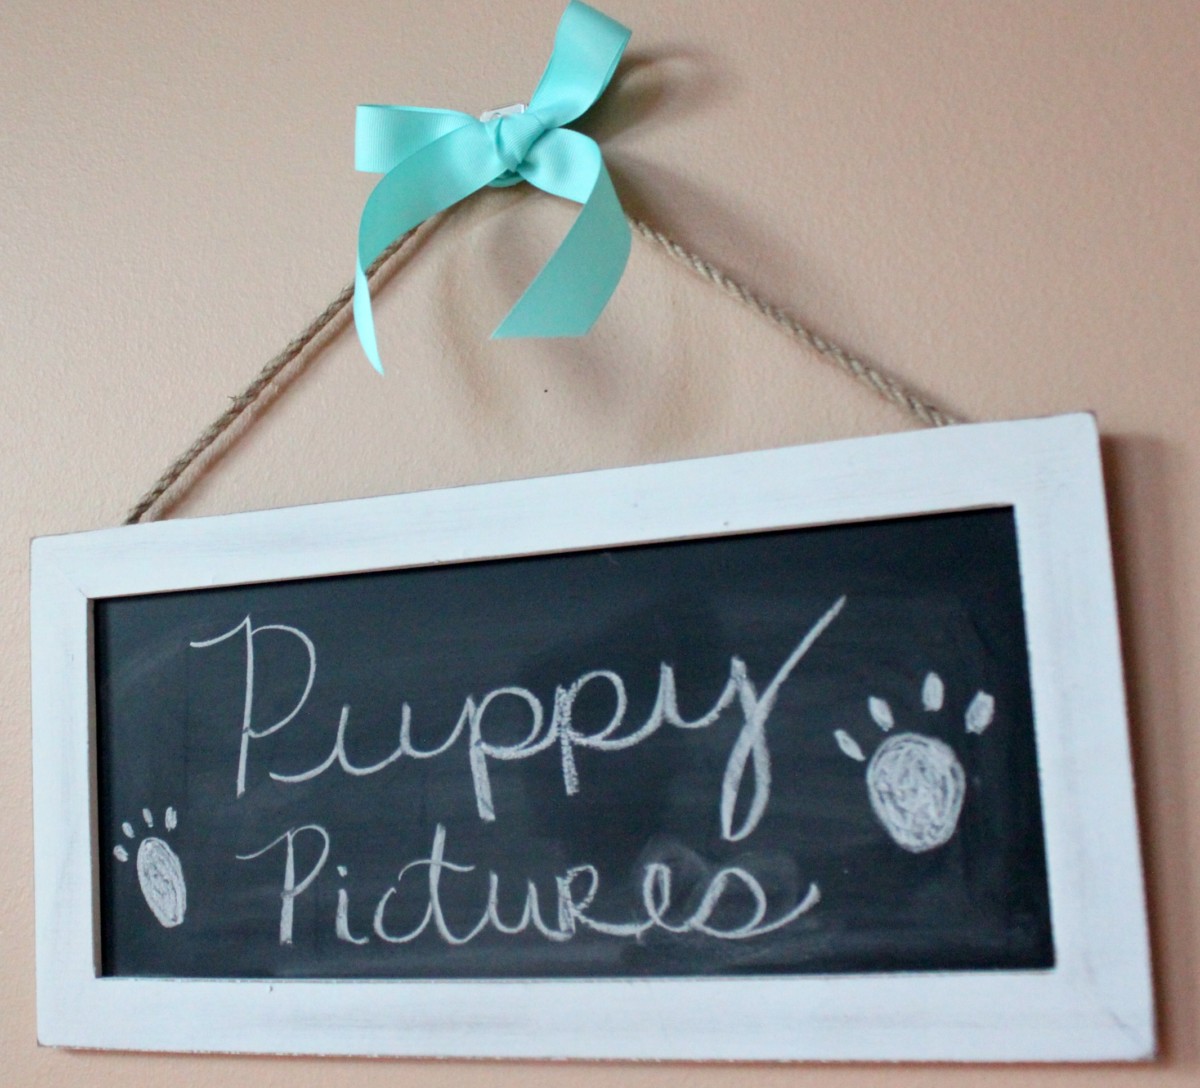 puppypictures